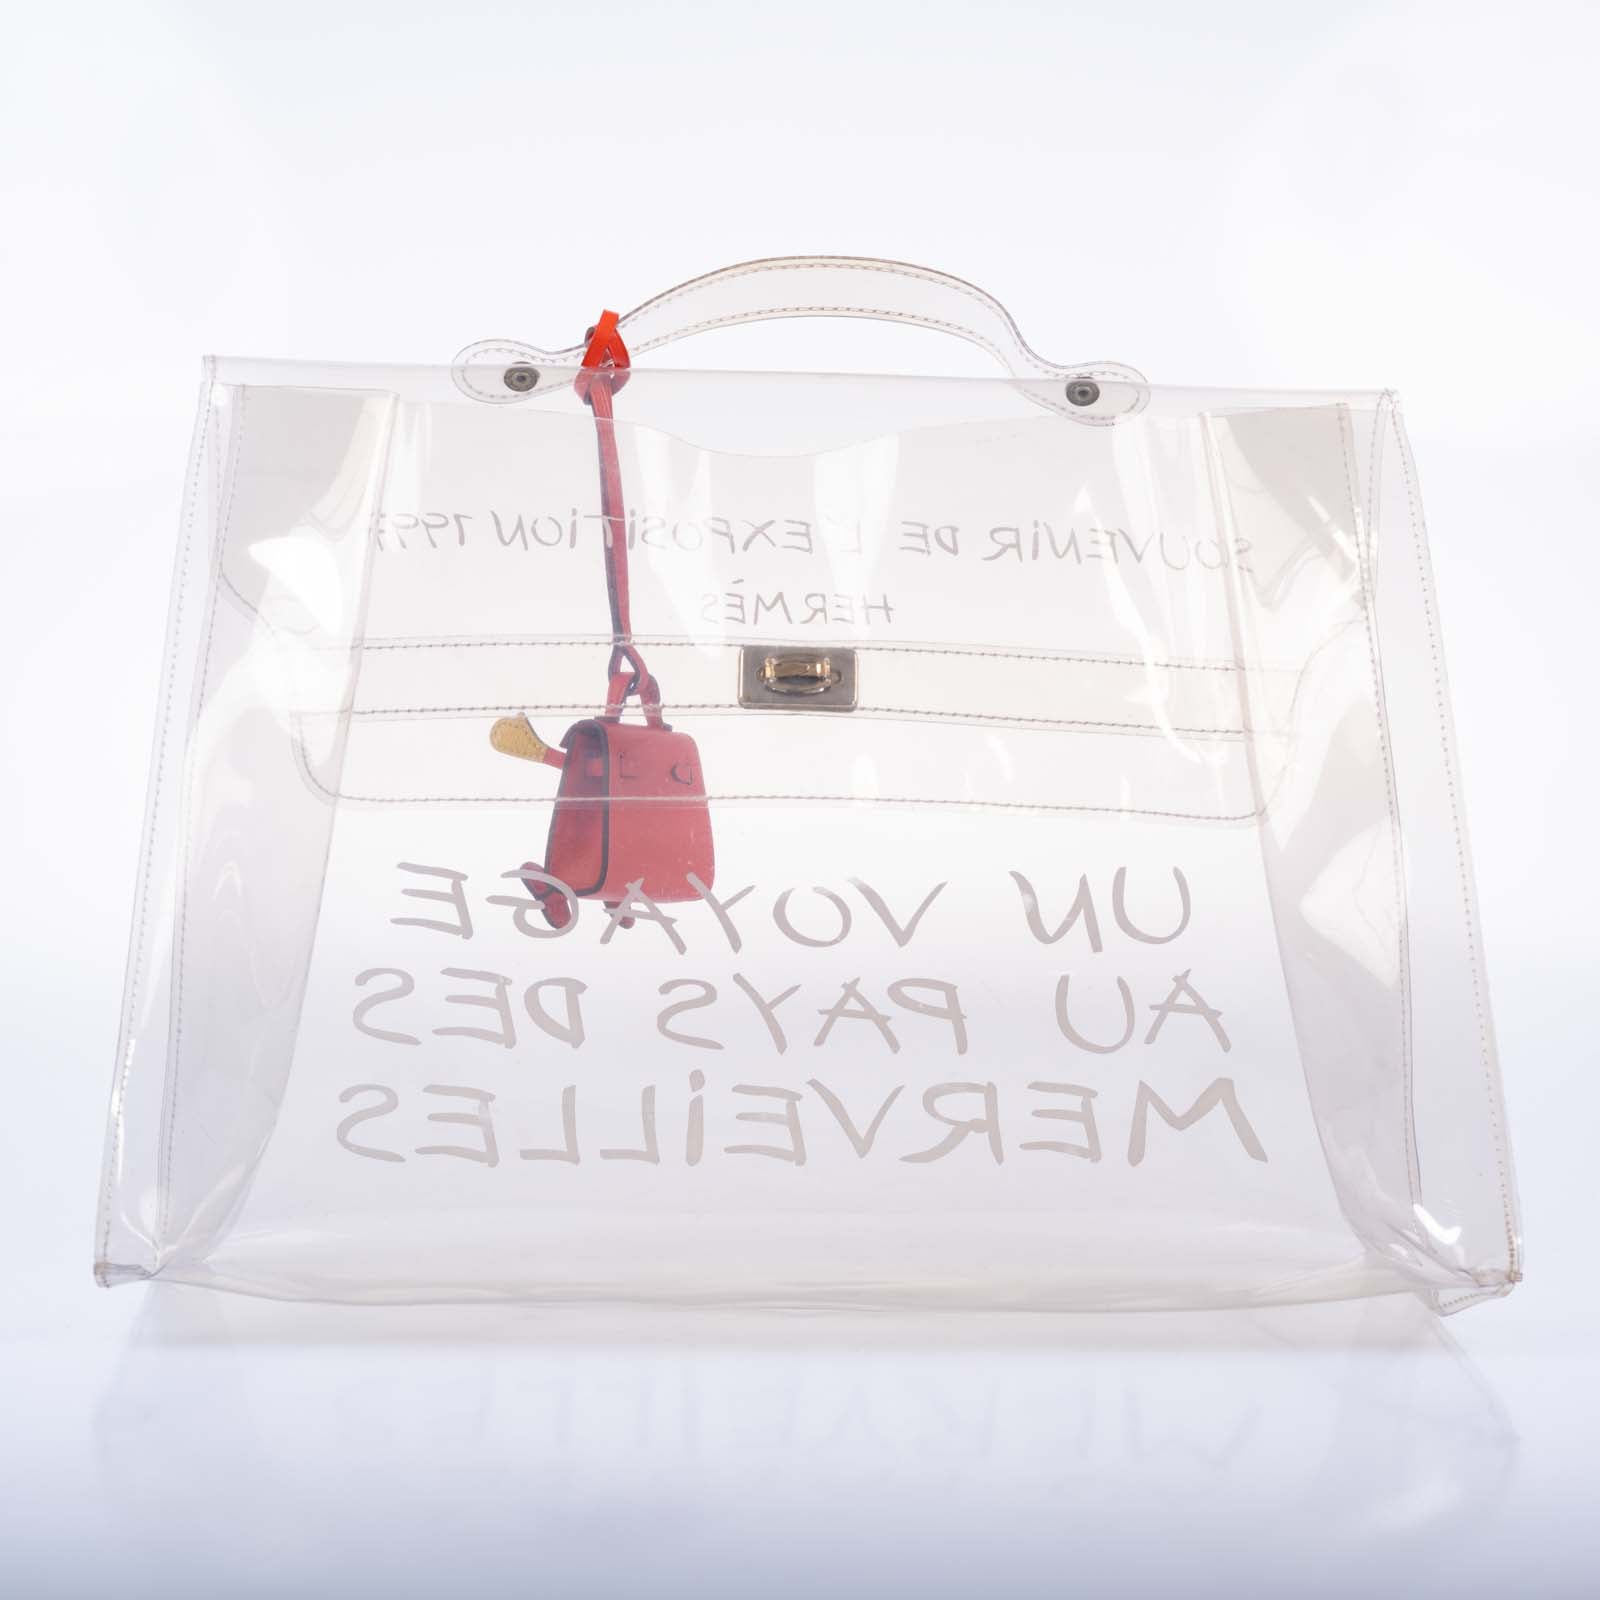 Hermès Kelly 40 Transparent Vinyl Souvenir de l'Exposition Bag